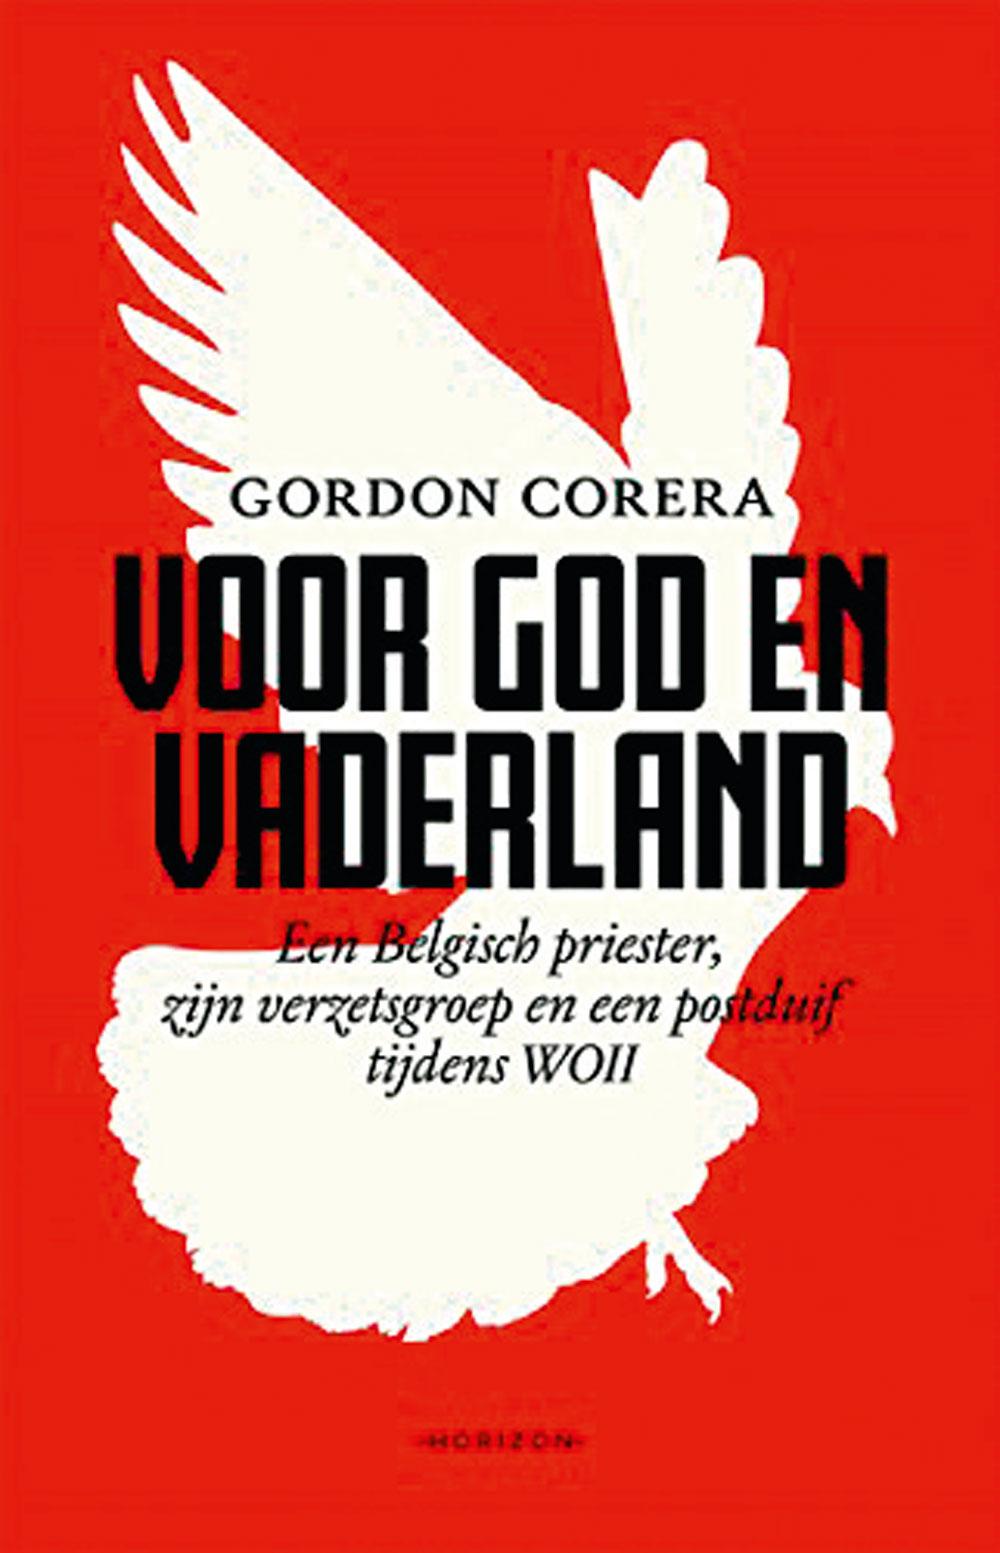 Gordon Corera, Voor God en vaderland. Een Belgische priester, zijn verzetsgroep en een postduif tijdens WO II, Uitgeverij Horizon, 320 pagina's, 22,50 euro.